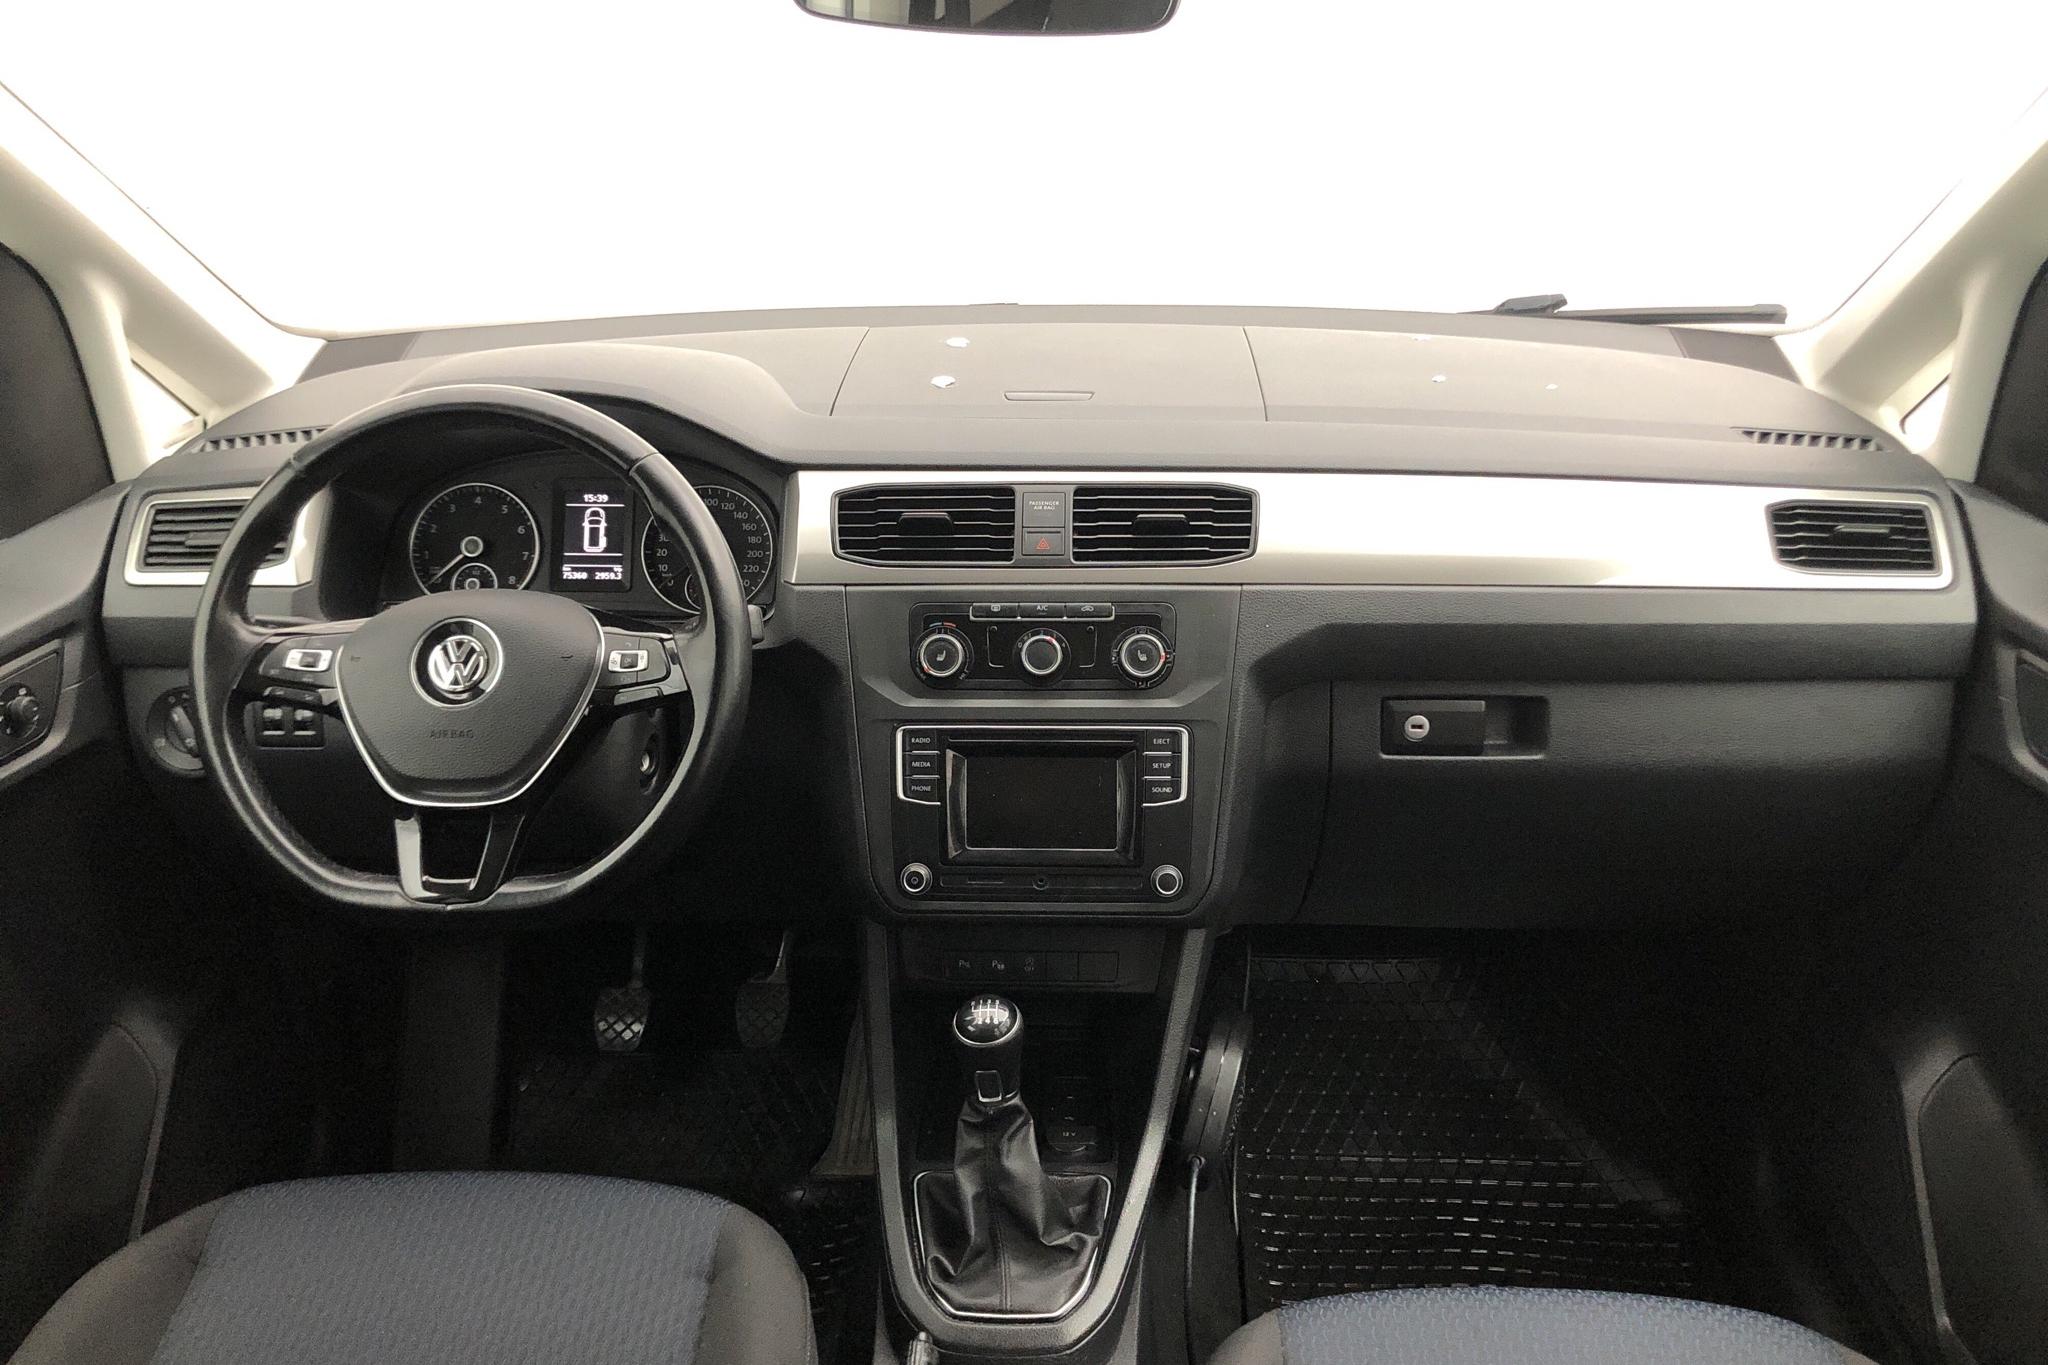 VW Caddy MPV 1.4 TGI (110hk) - 75 360 km - Manual - white - 2016